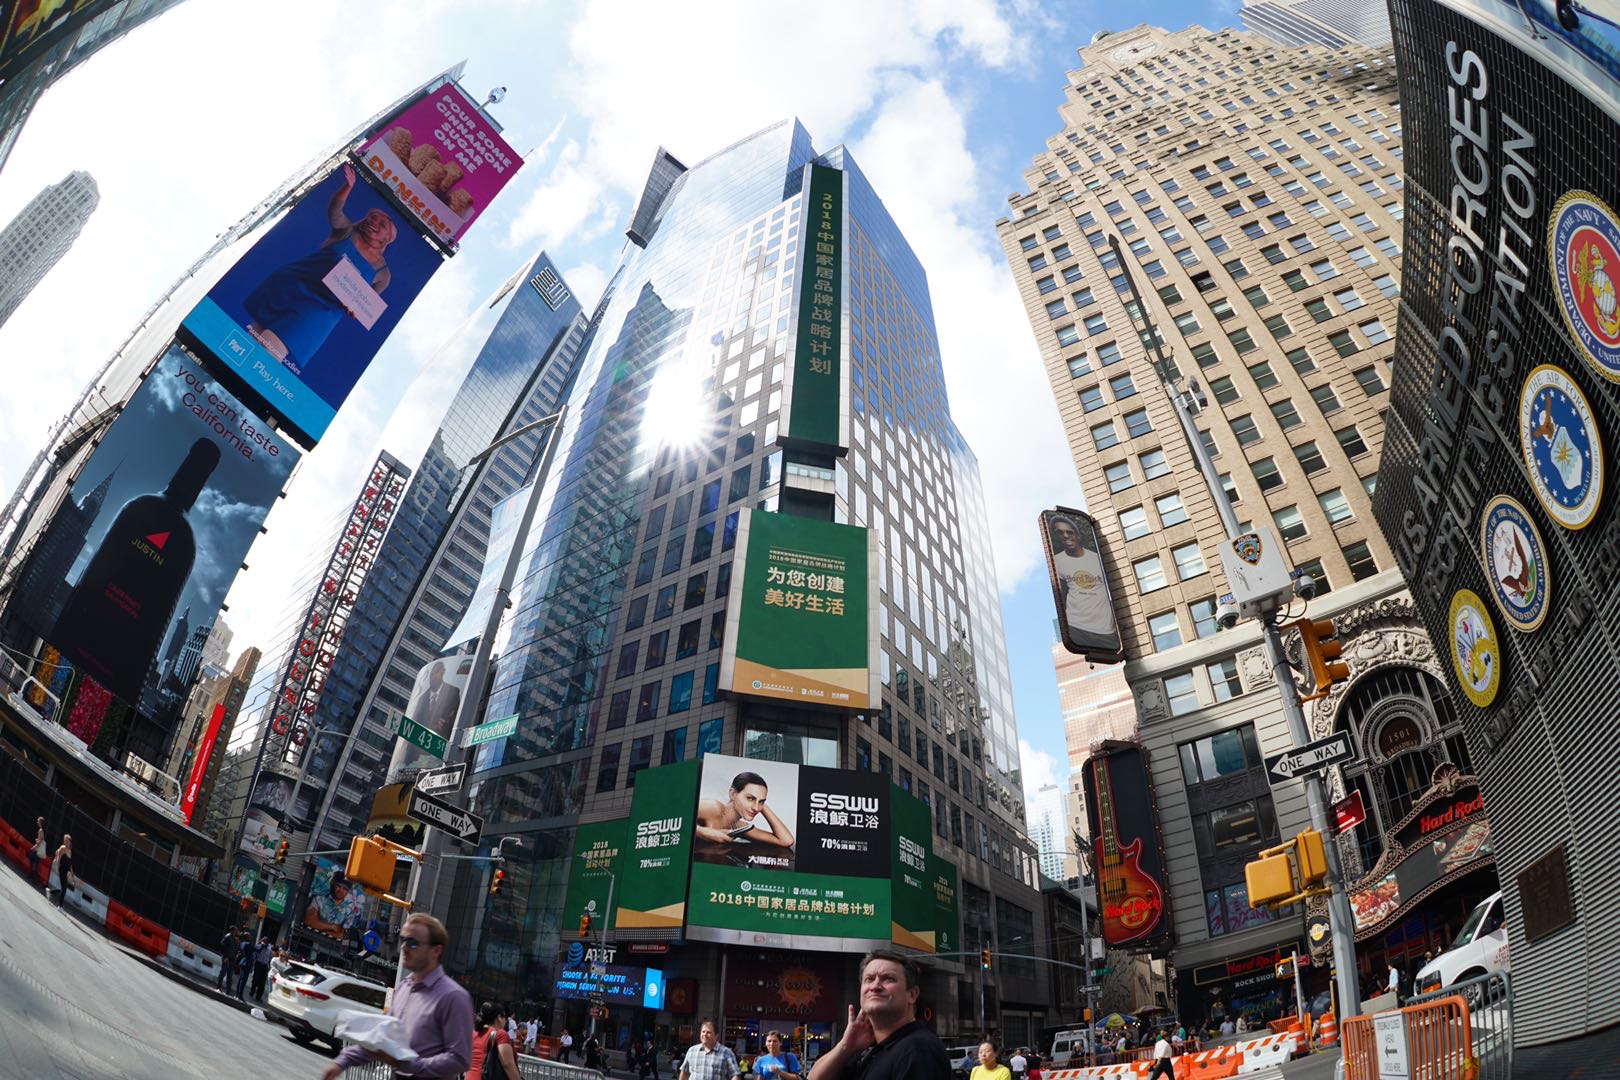 海外美国全美国纽约时代广场汤森路透广告屏43号和第七大道交叉口海外国际LED屏